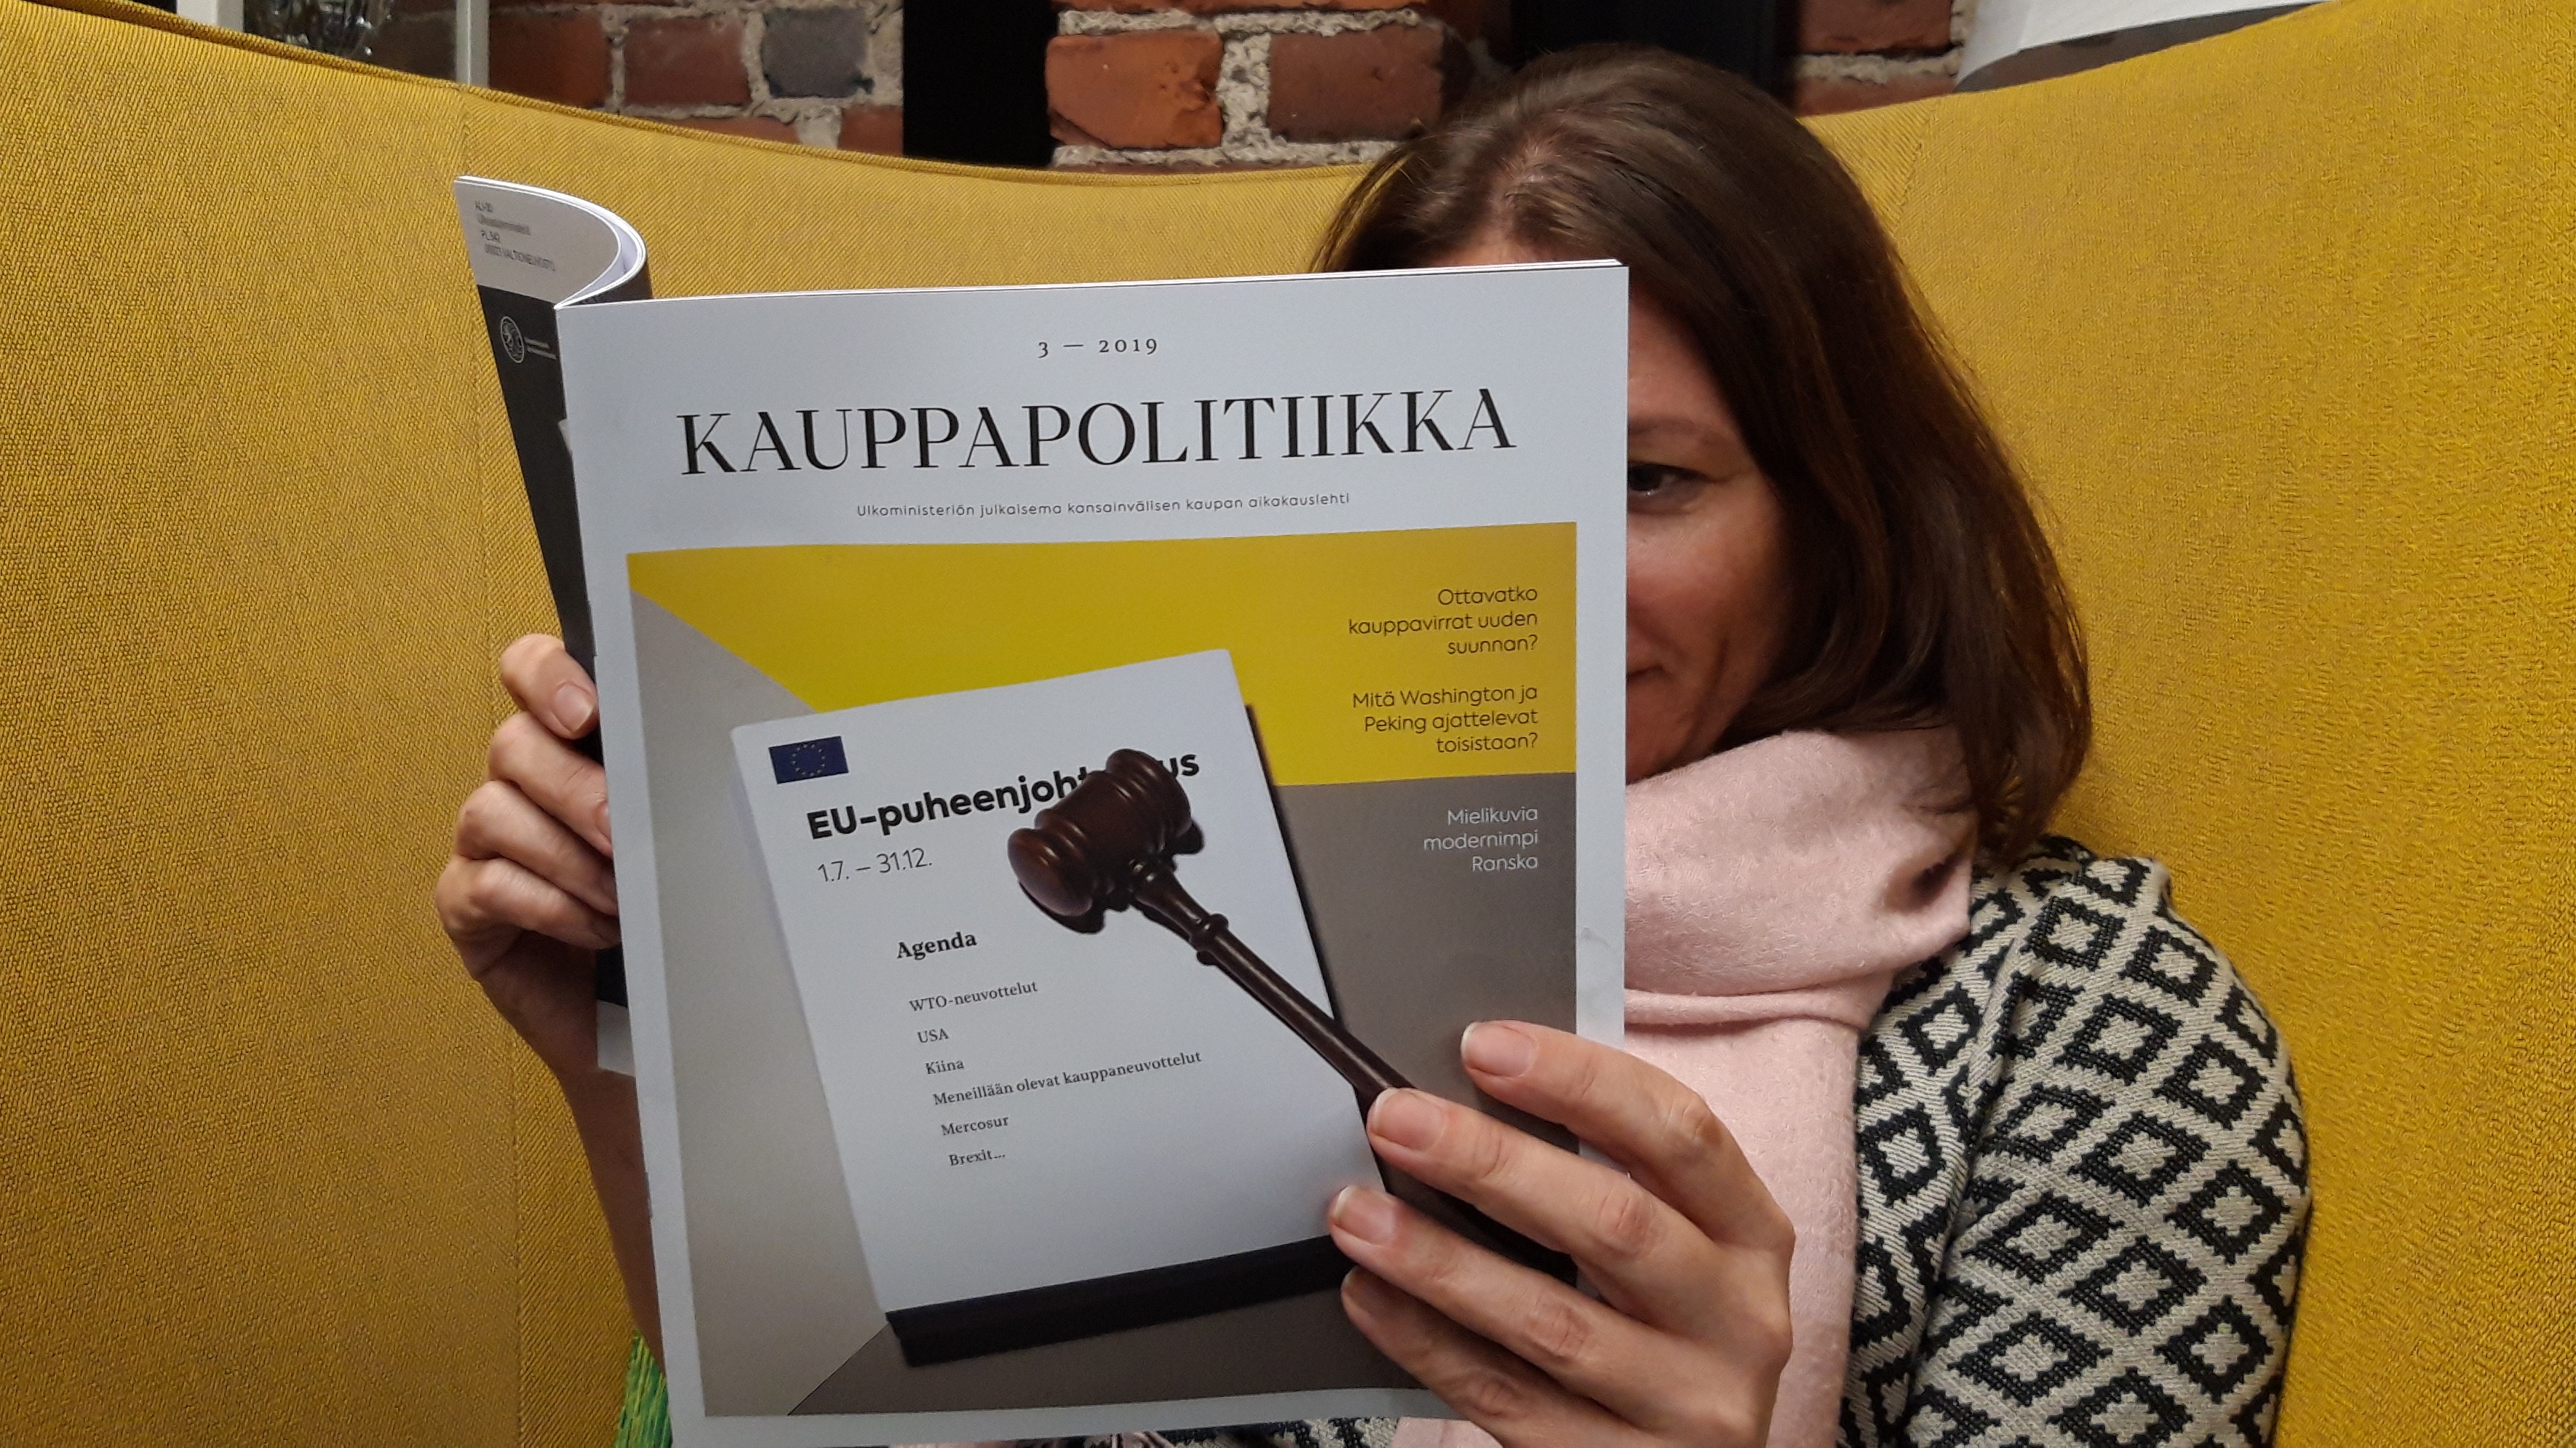 Kauppapolitiikka-lehden päätoimittaja Lotta Nuotio lukemassa Kauppapolitiikka-lehteä.